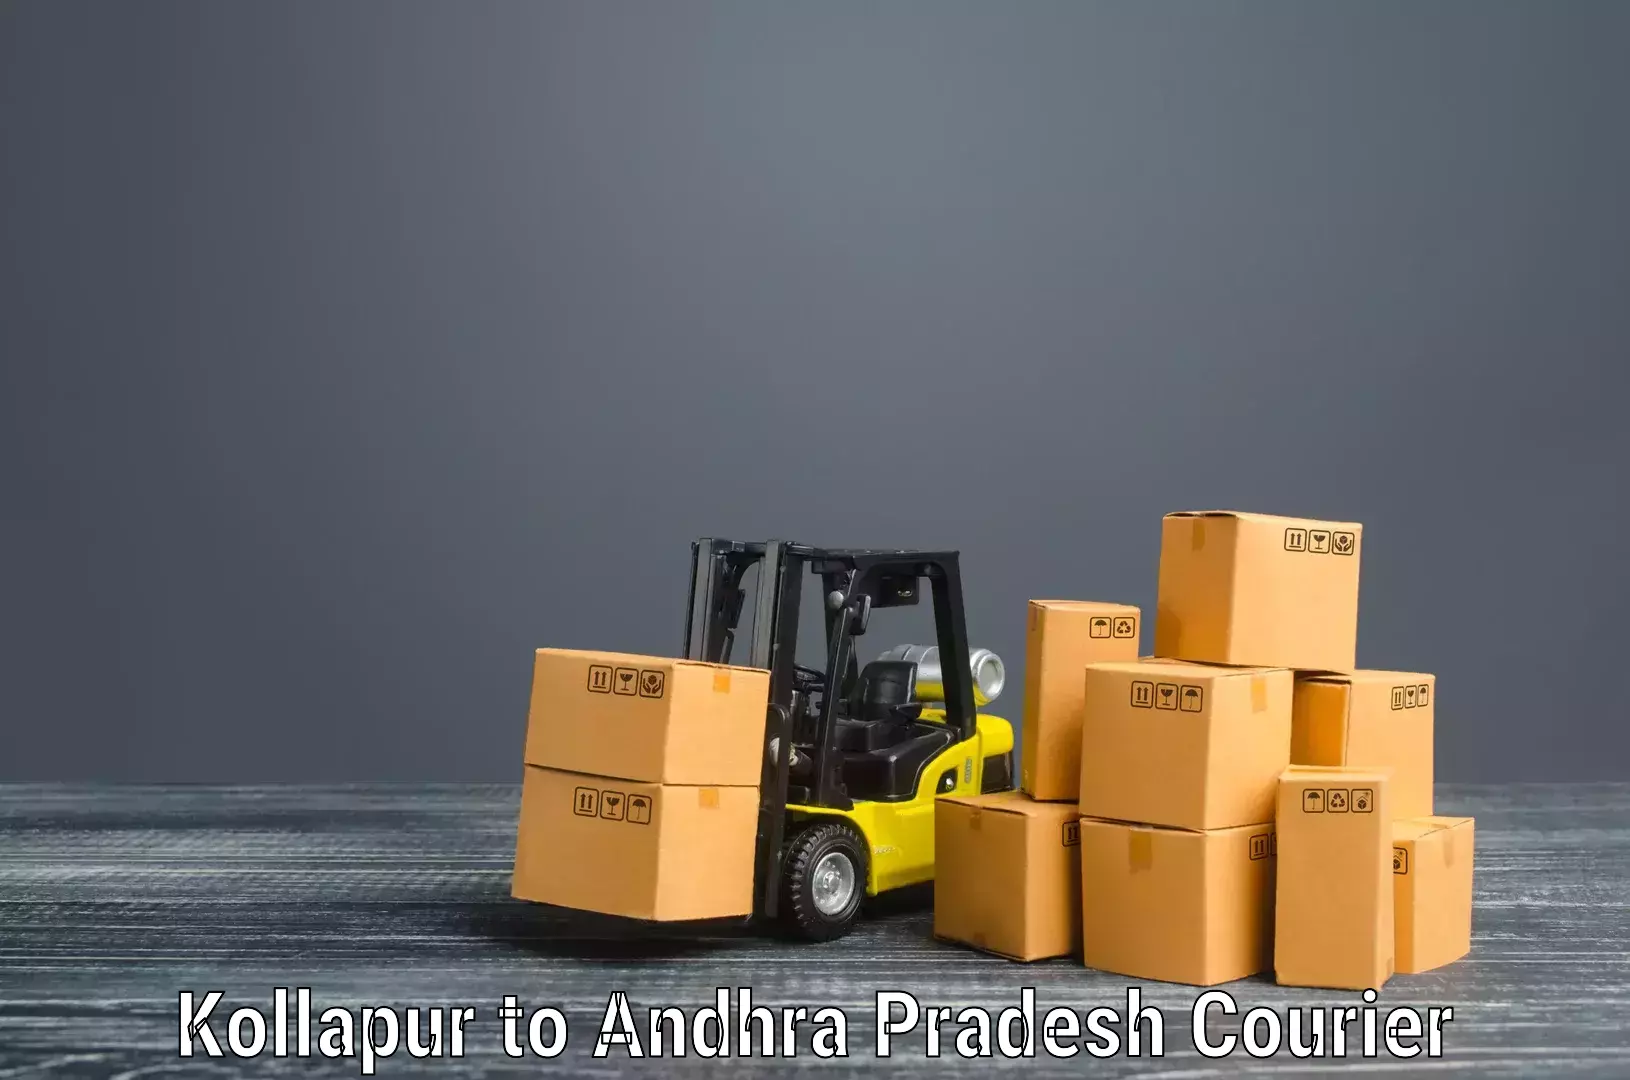 Furniture transport specialists Kollapur to Chandragiri